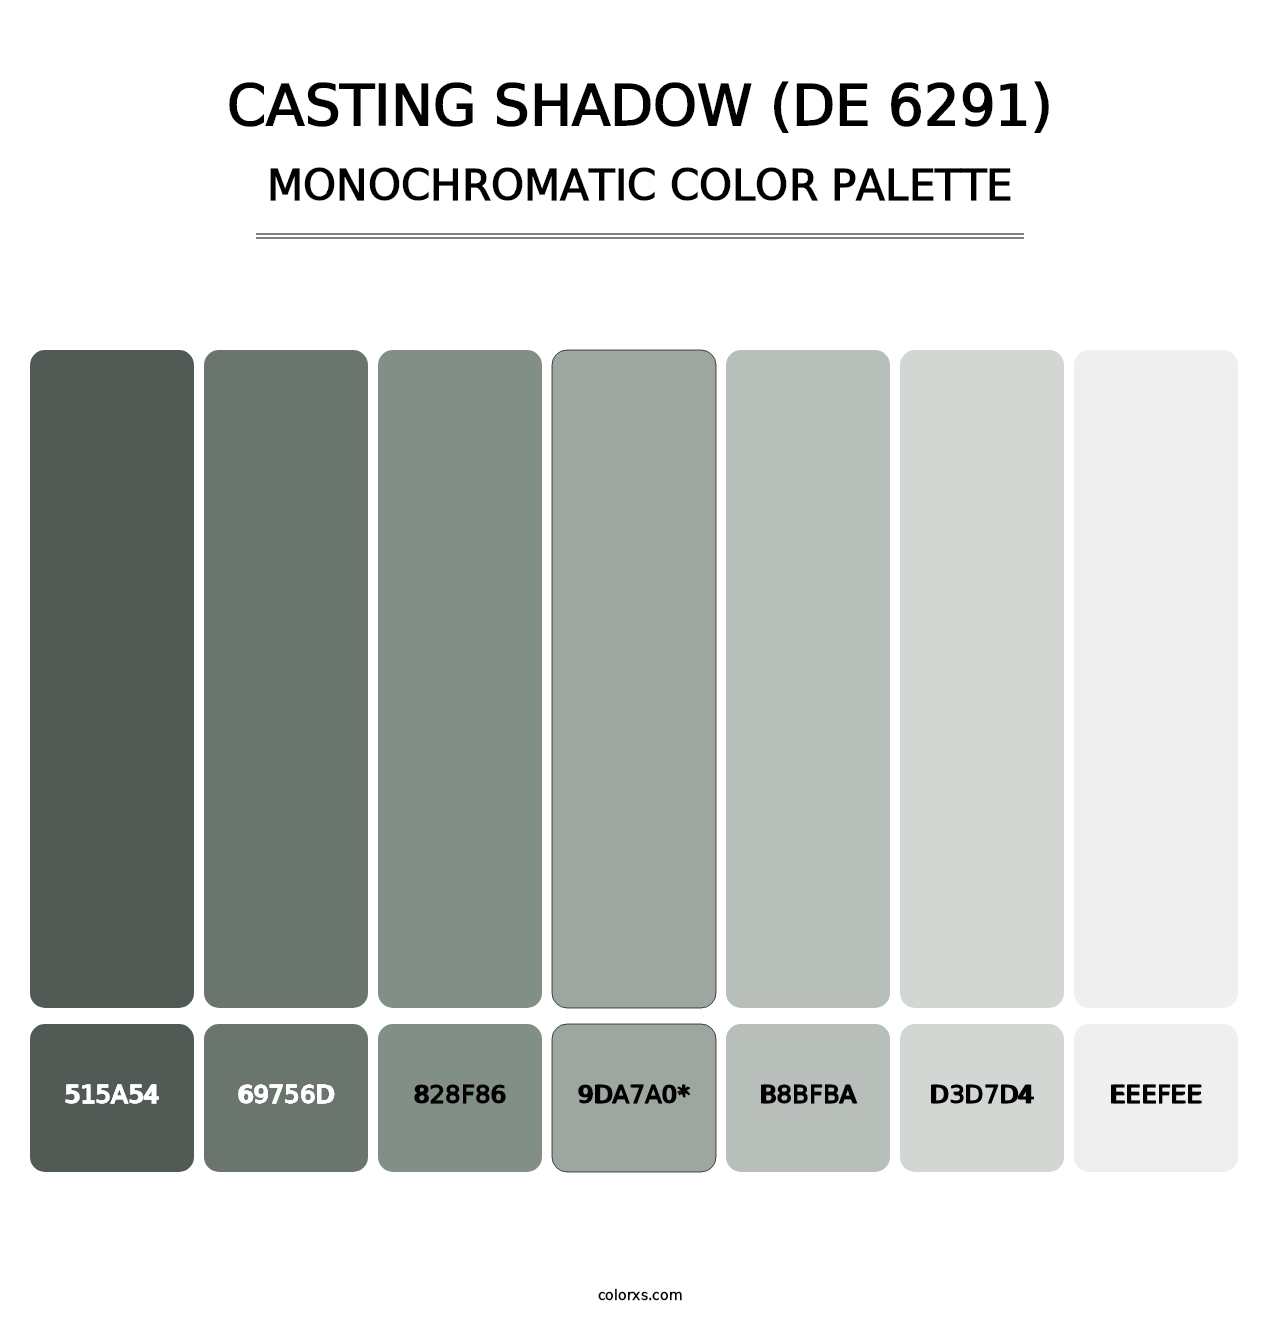 Casting Shadow (DE 6291) - Monochromatic Color Palette